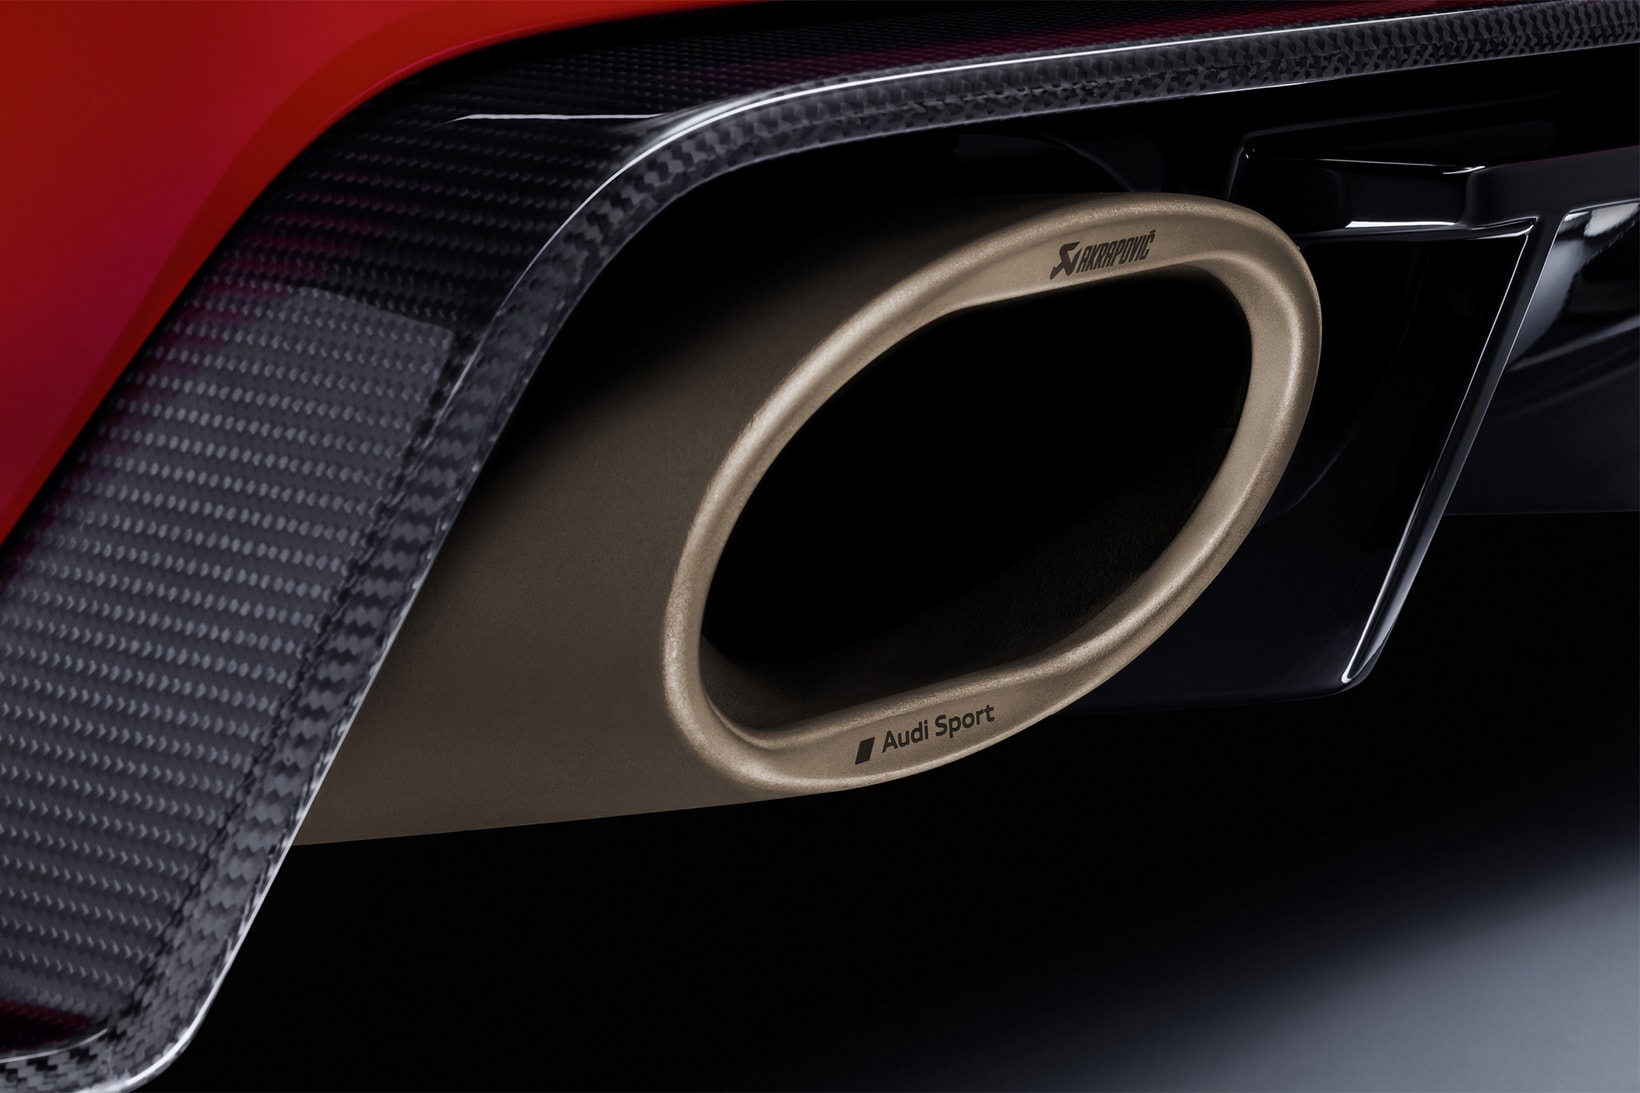 Audi TT Clubsport Concept 600 Horsepower SEMA 2017 Red